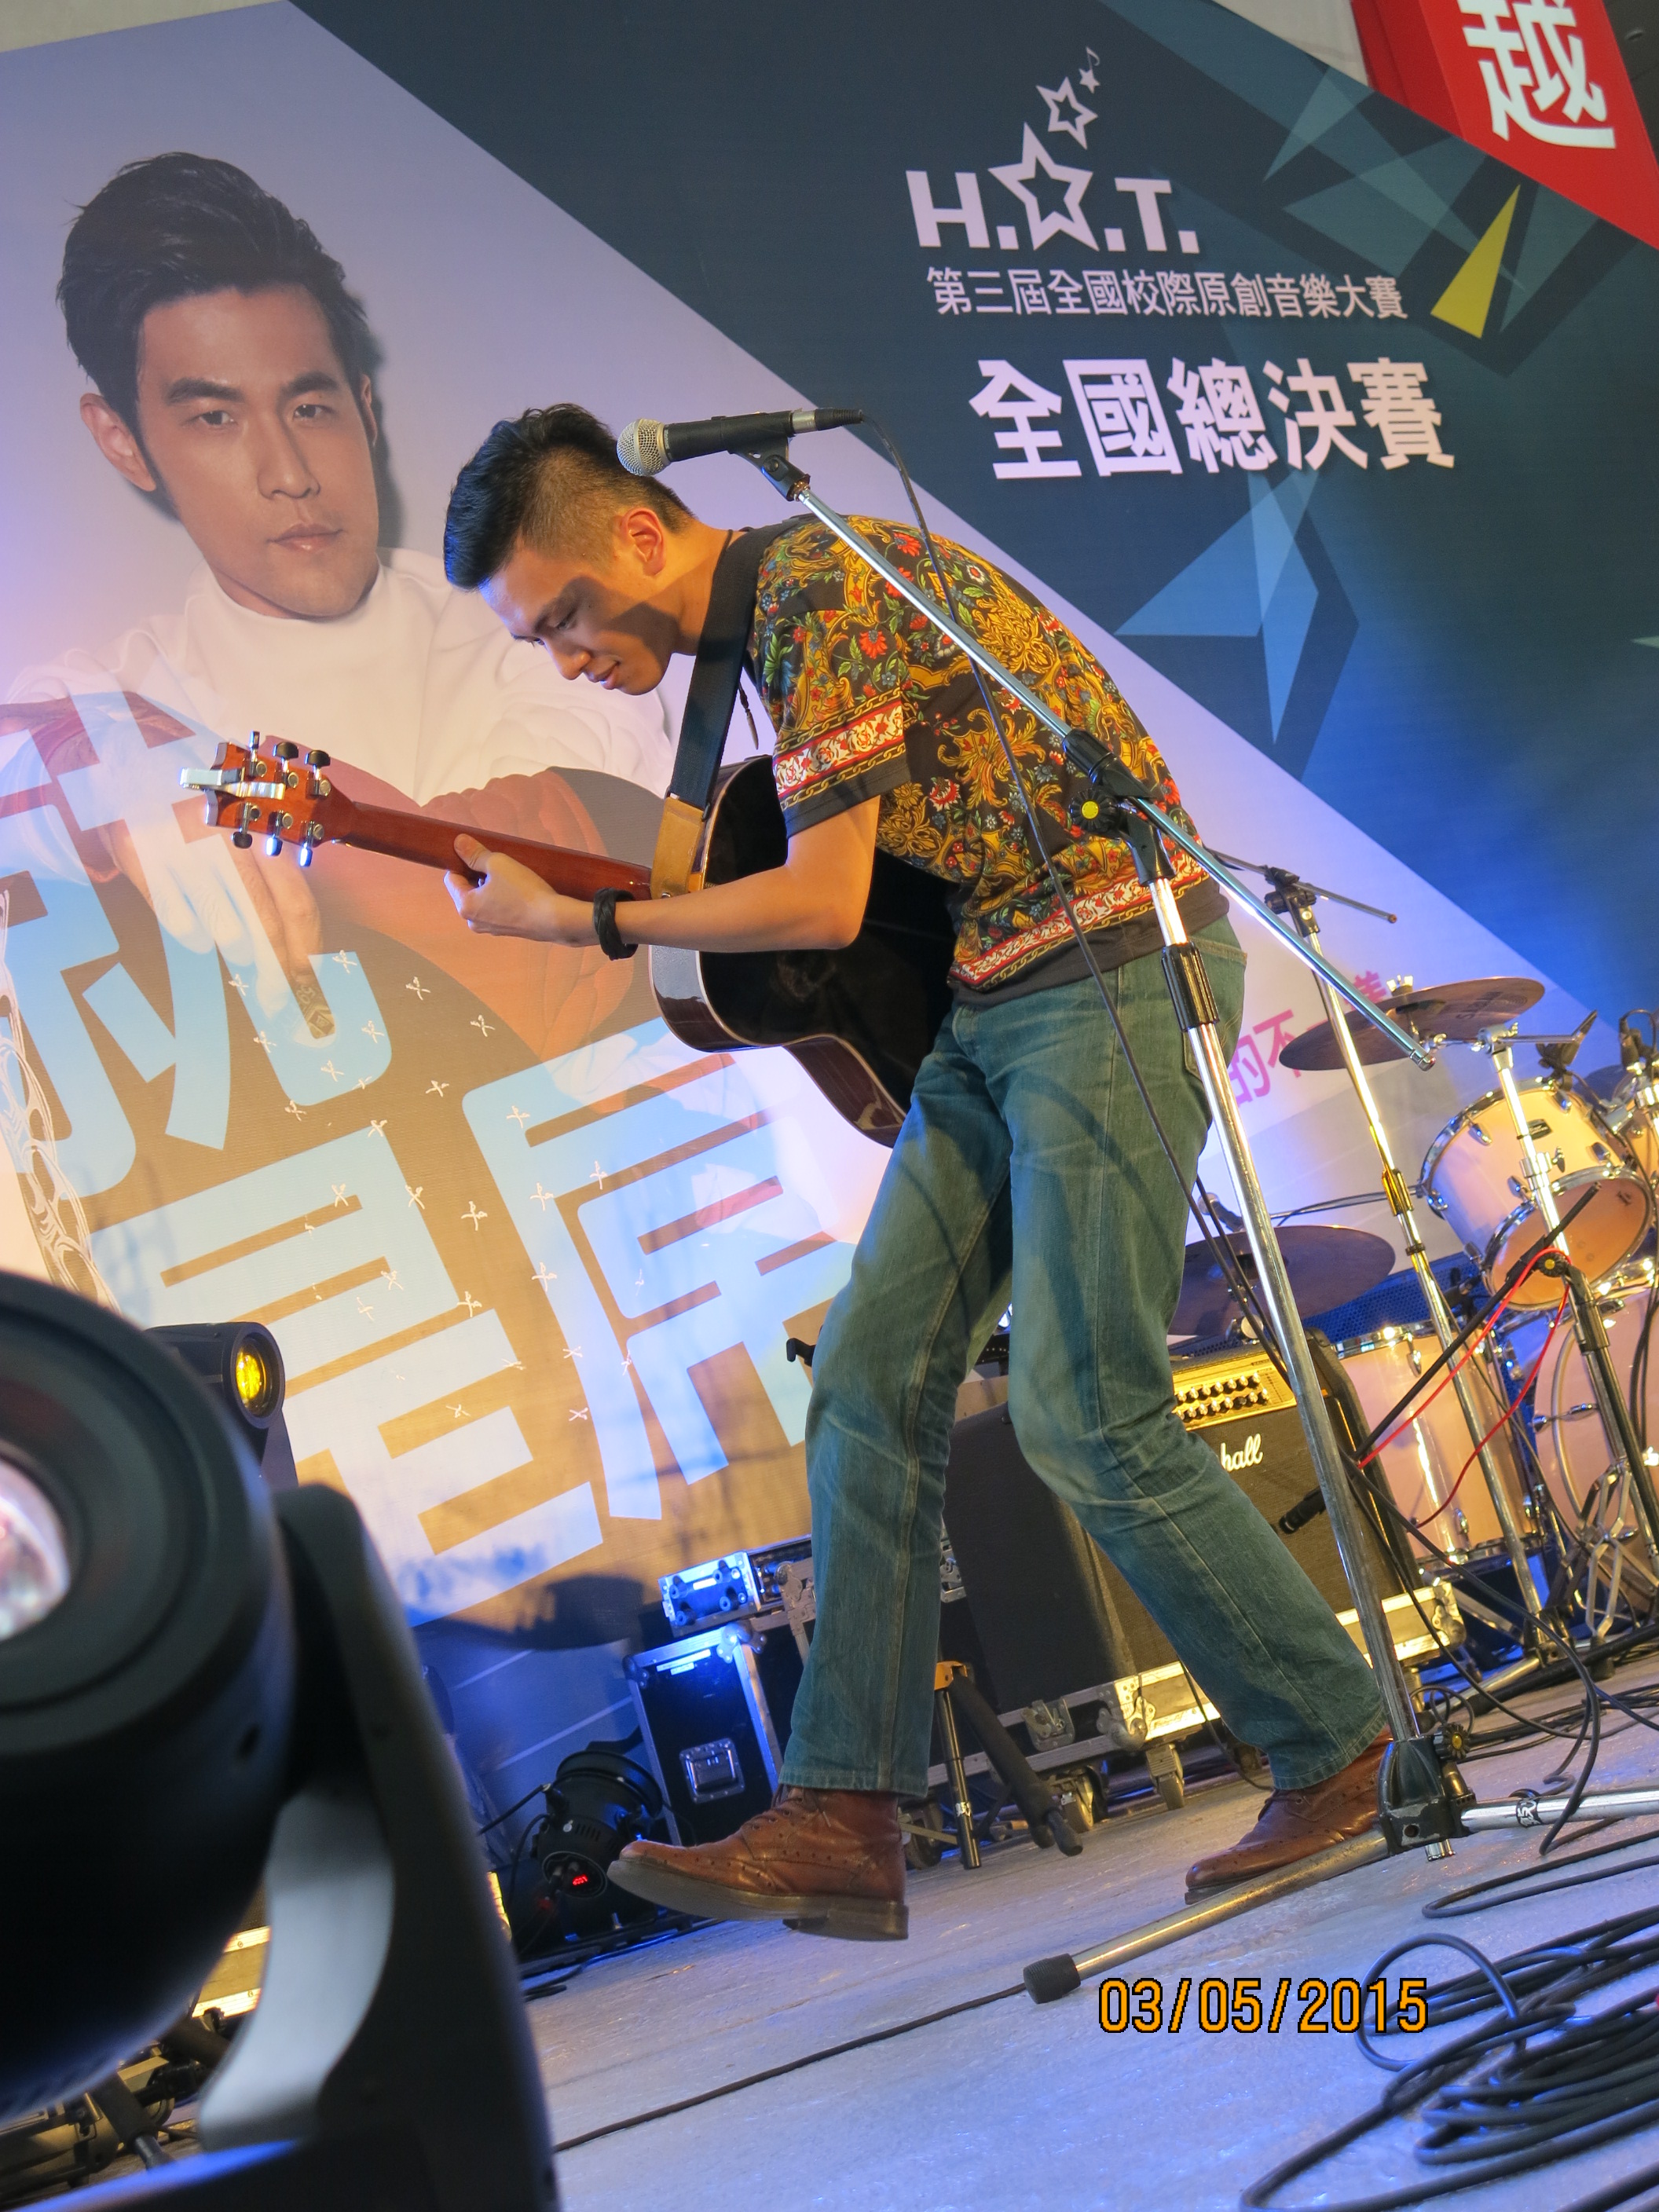 熱愛音樂的林俊安說，站上了全國的比賽舞台，見識到了大家對音樂細膩度的要求及舞台表現的魅力，十分令人感動。